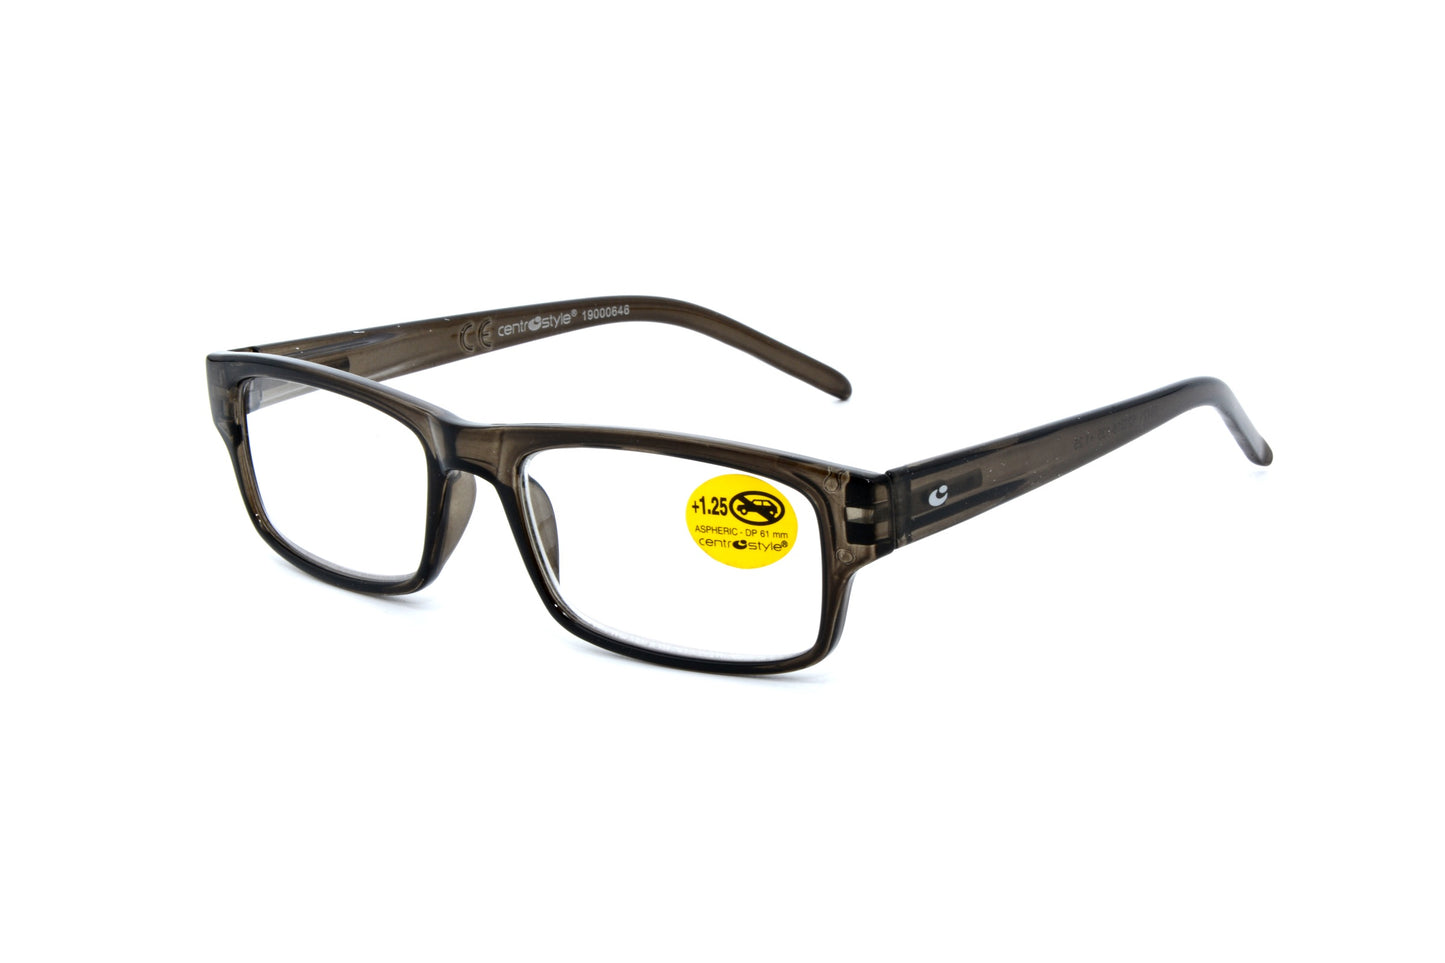 Centrostyle reading glasses 68420-9 - Optics Trading